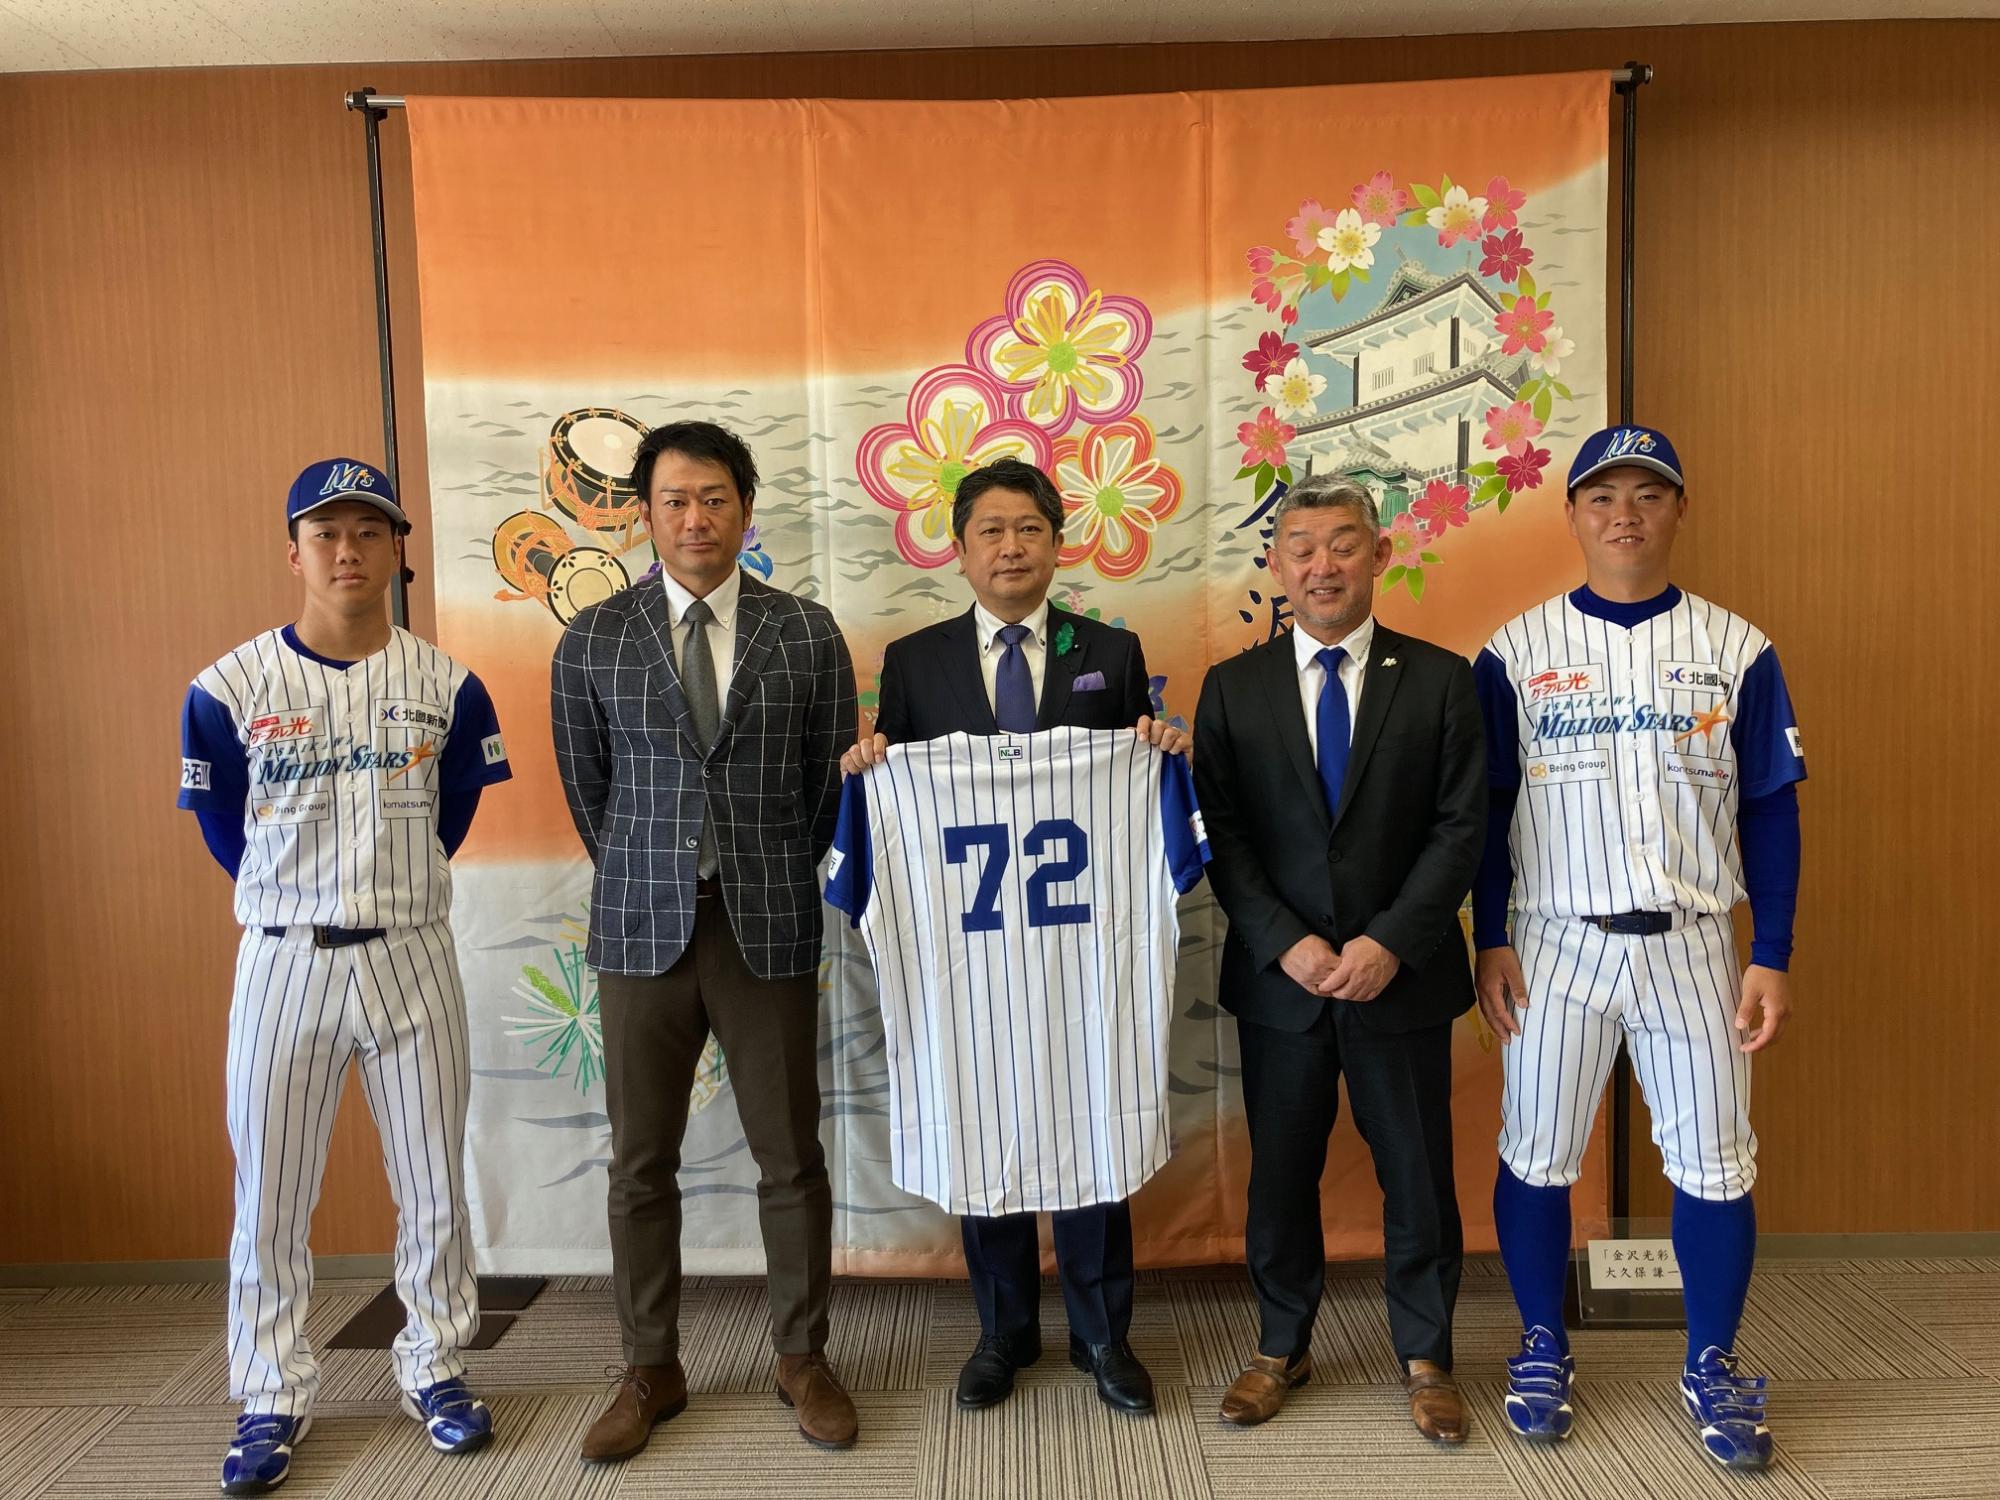 石川ミリオンスターズの監督、選手と市長の写真